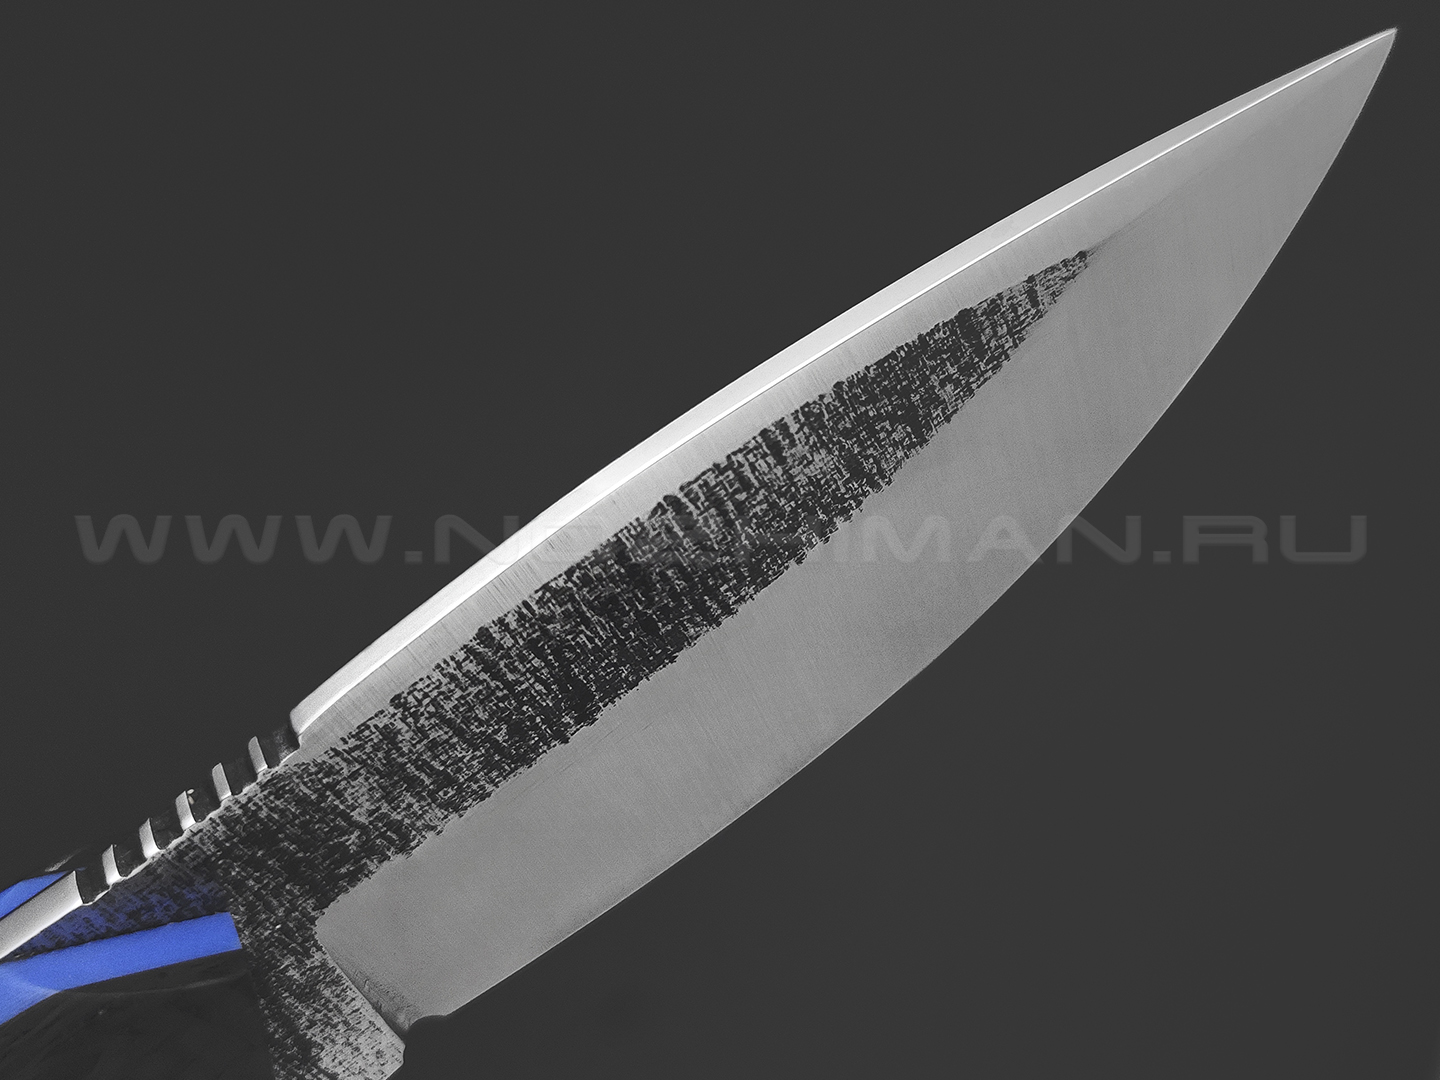 7 ножей нож Пиранья сталь K340 satin & ковка, рукоять Carbon fiber, G10 blue